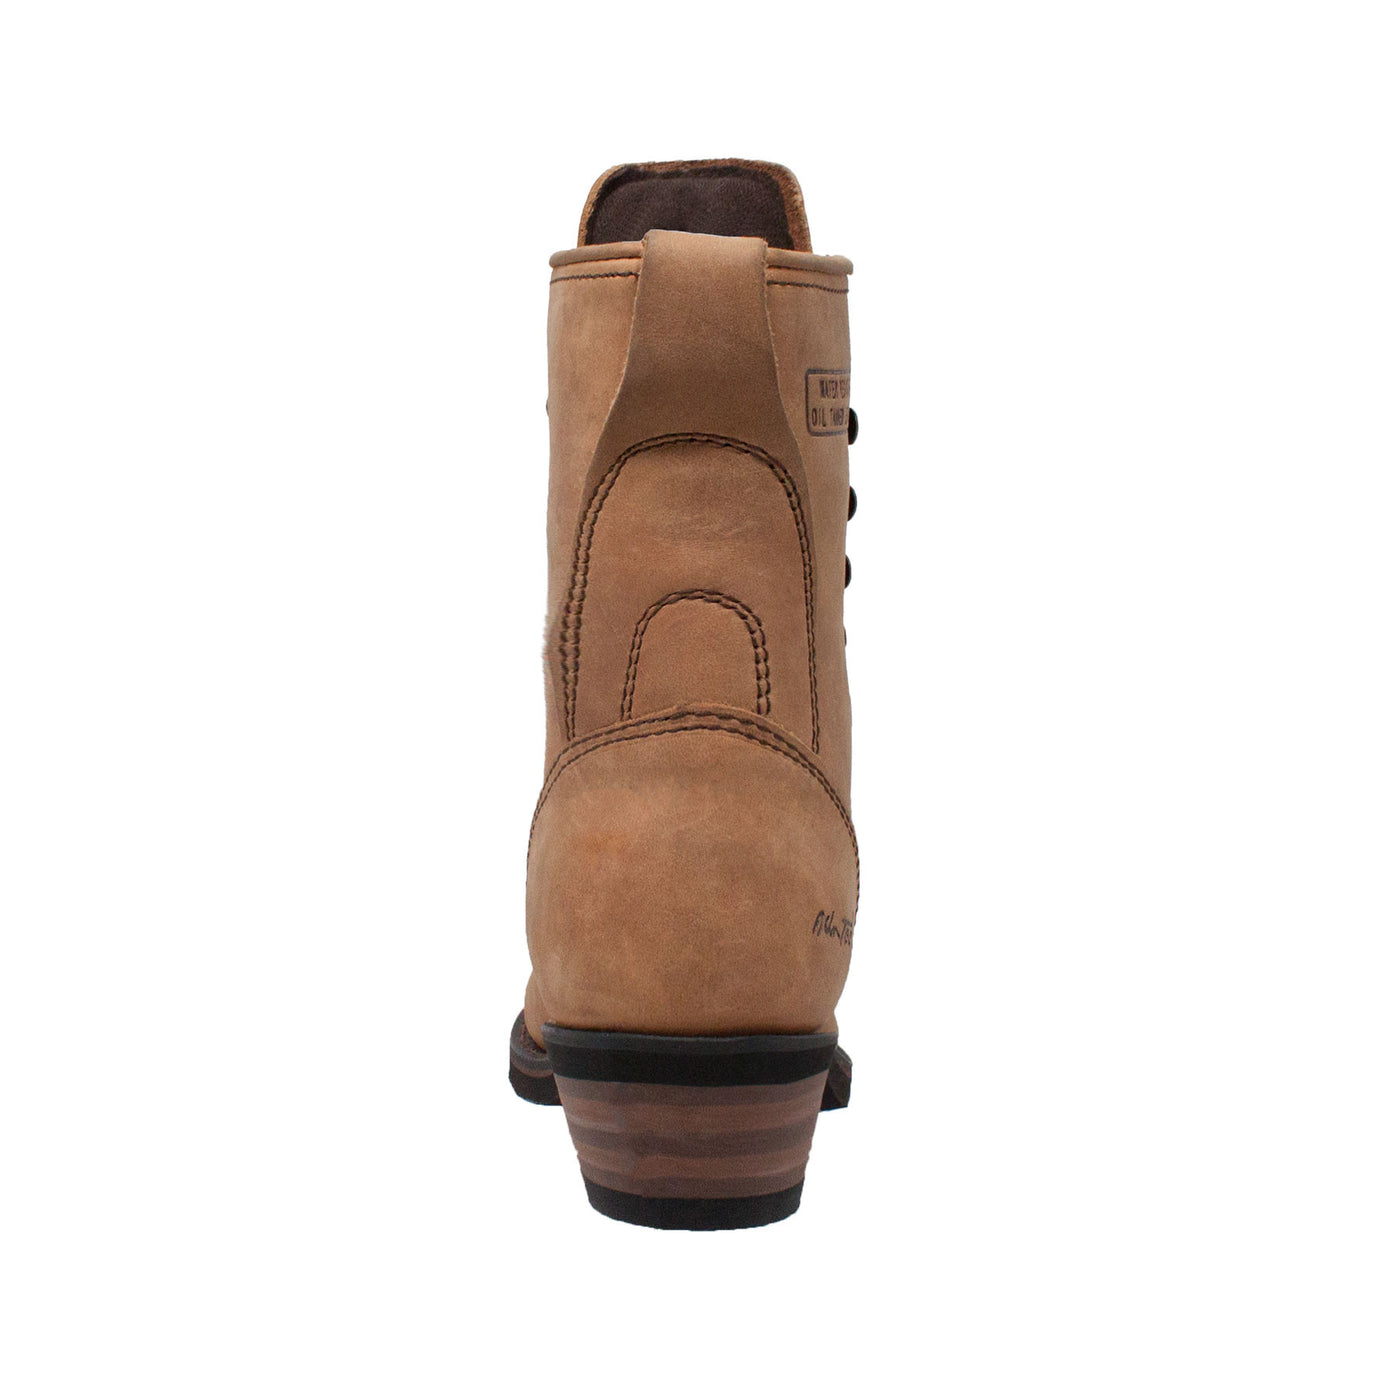 Women's 8" Packer Tan - 8224 - Shop Genuine Leather men & women's boots online | AdTecFootWear